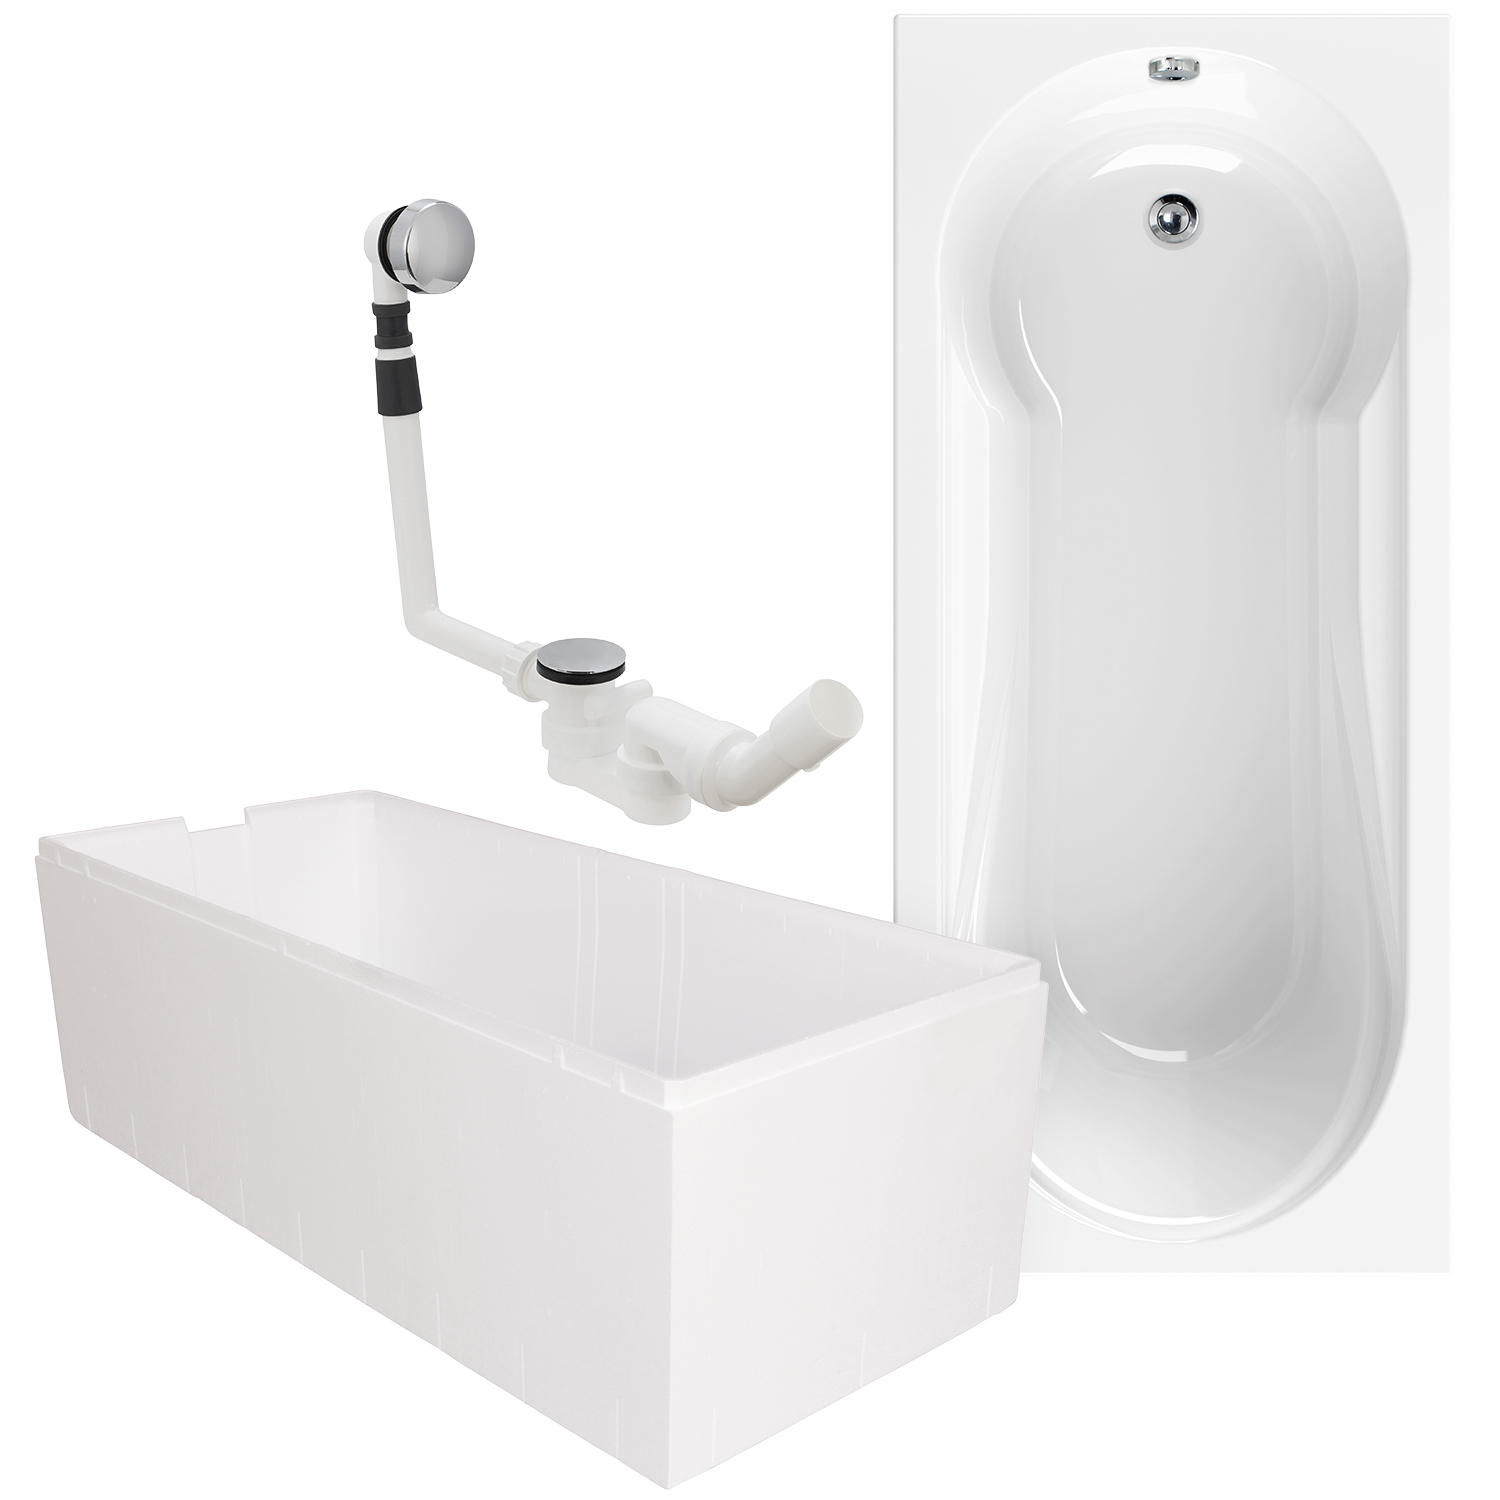 Komplett-Set Duschbadewanne Modern Small 2, 180 x 80 cm, mit Styroporträger und Ablaufgarnitur